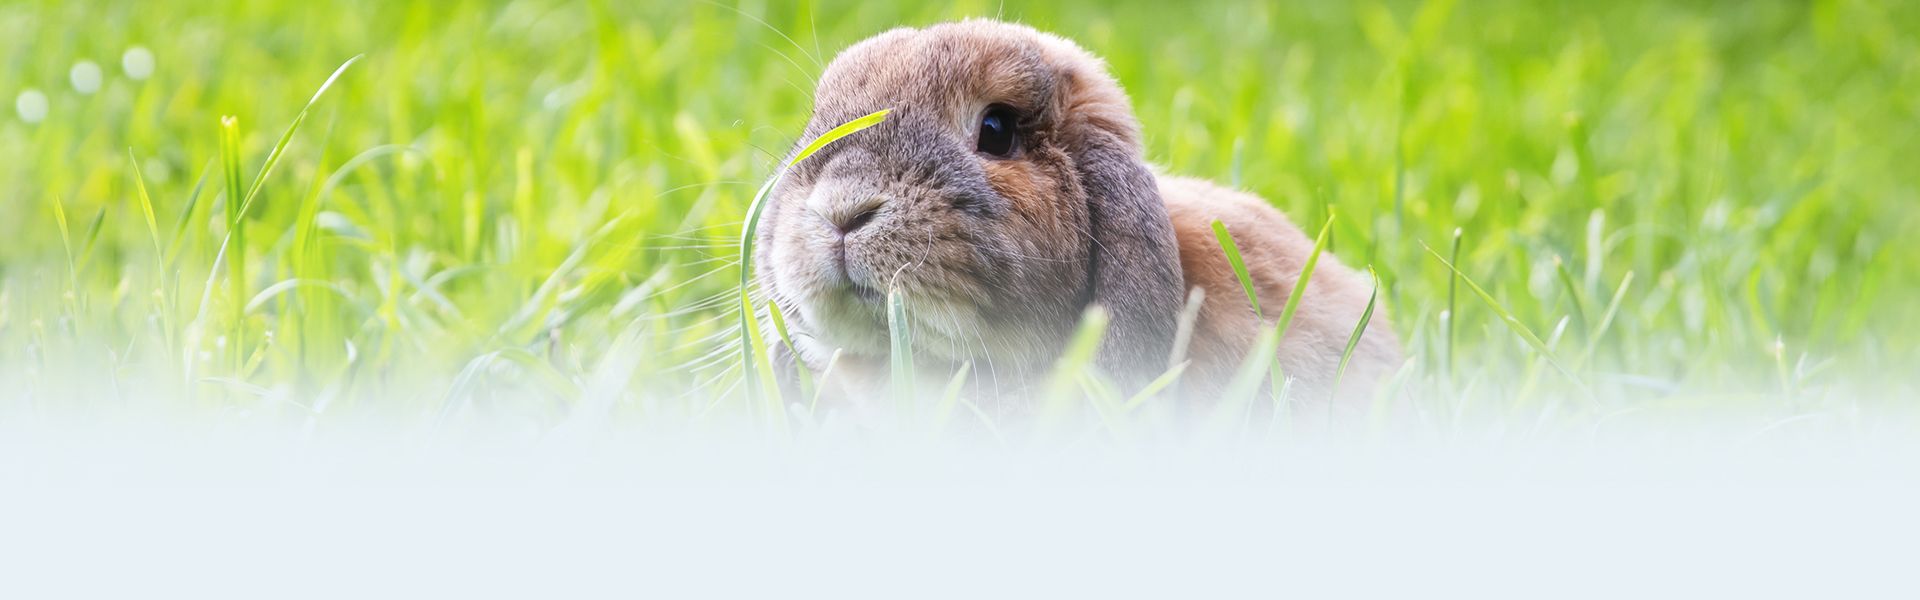 super cute rabbit among green grass